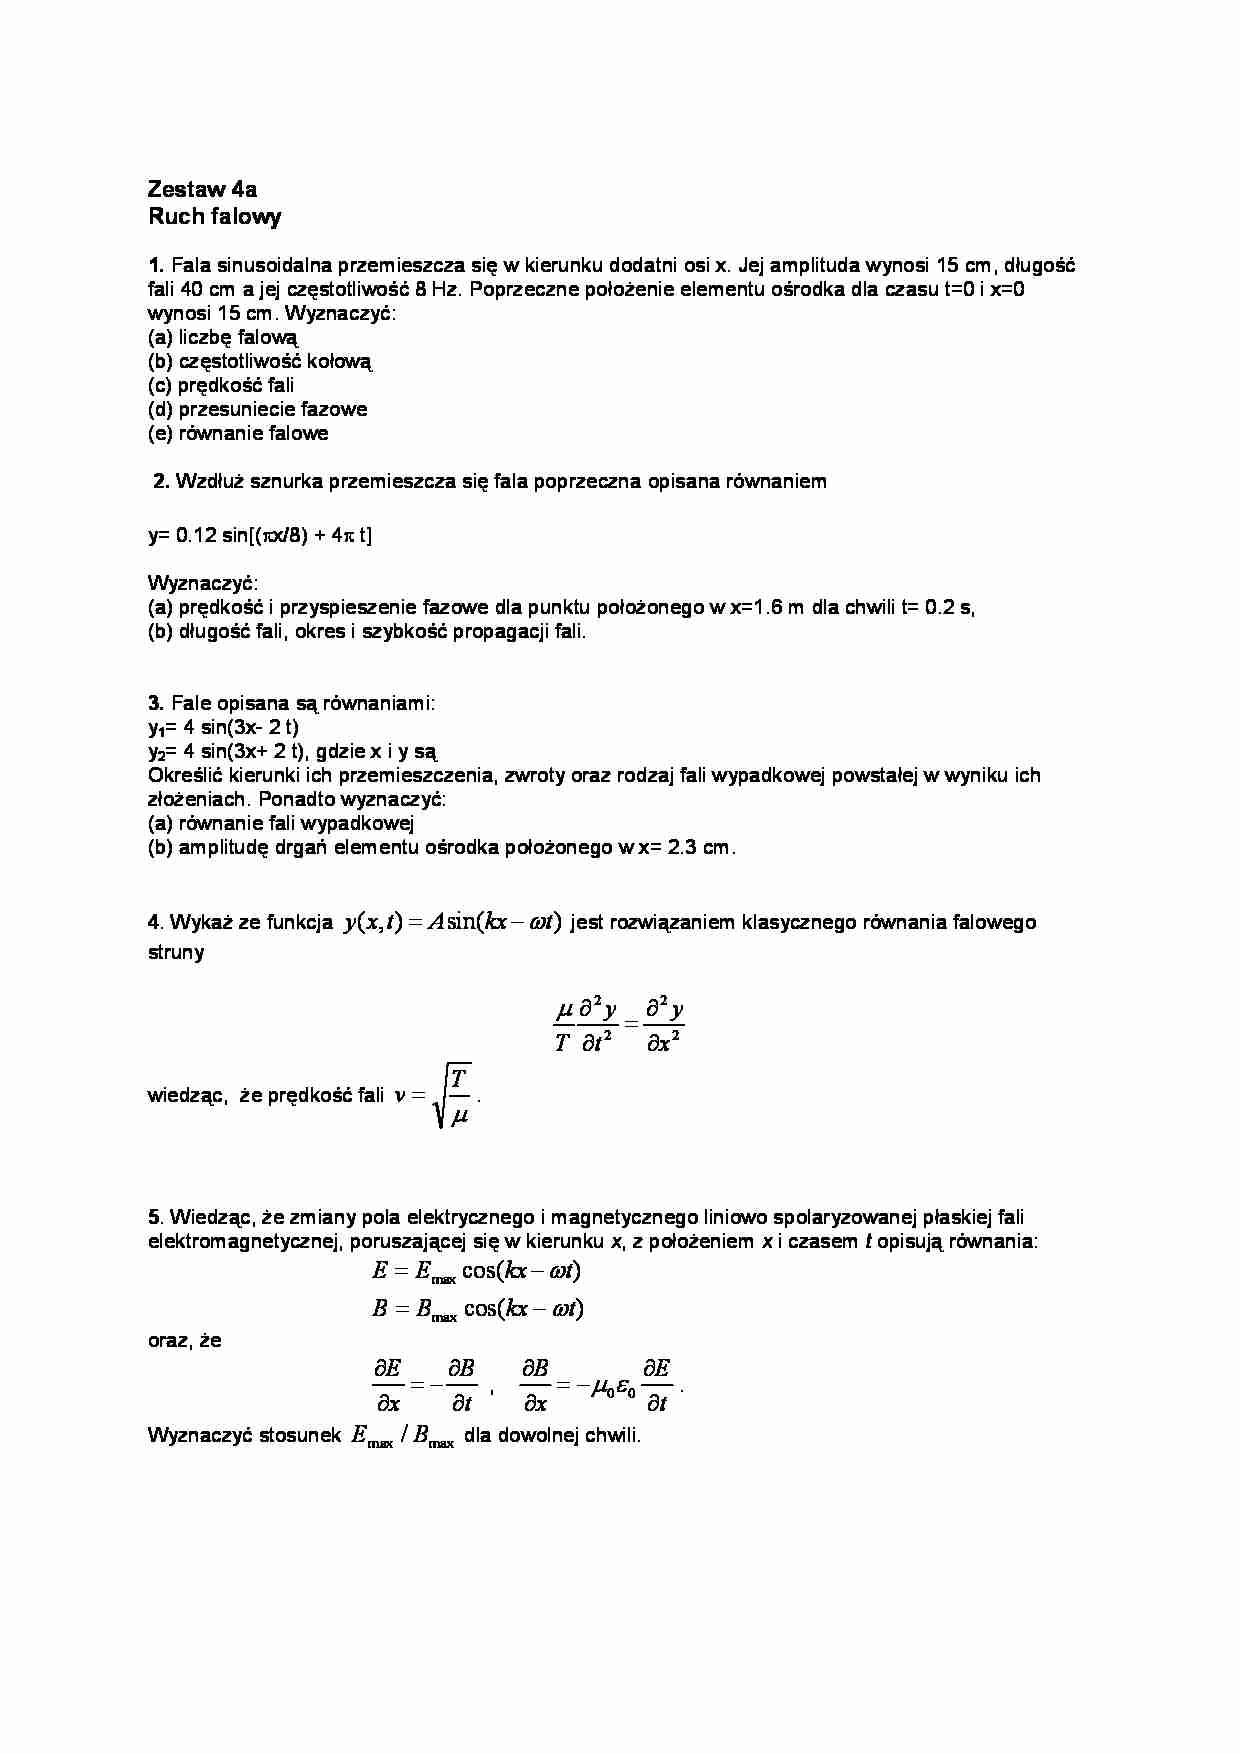  fizyka zestaw-4a - strona 1